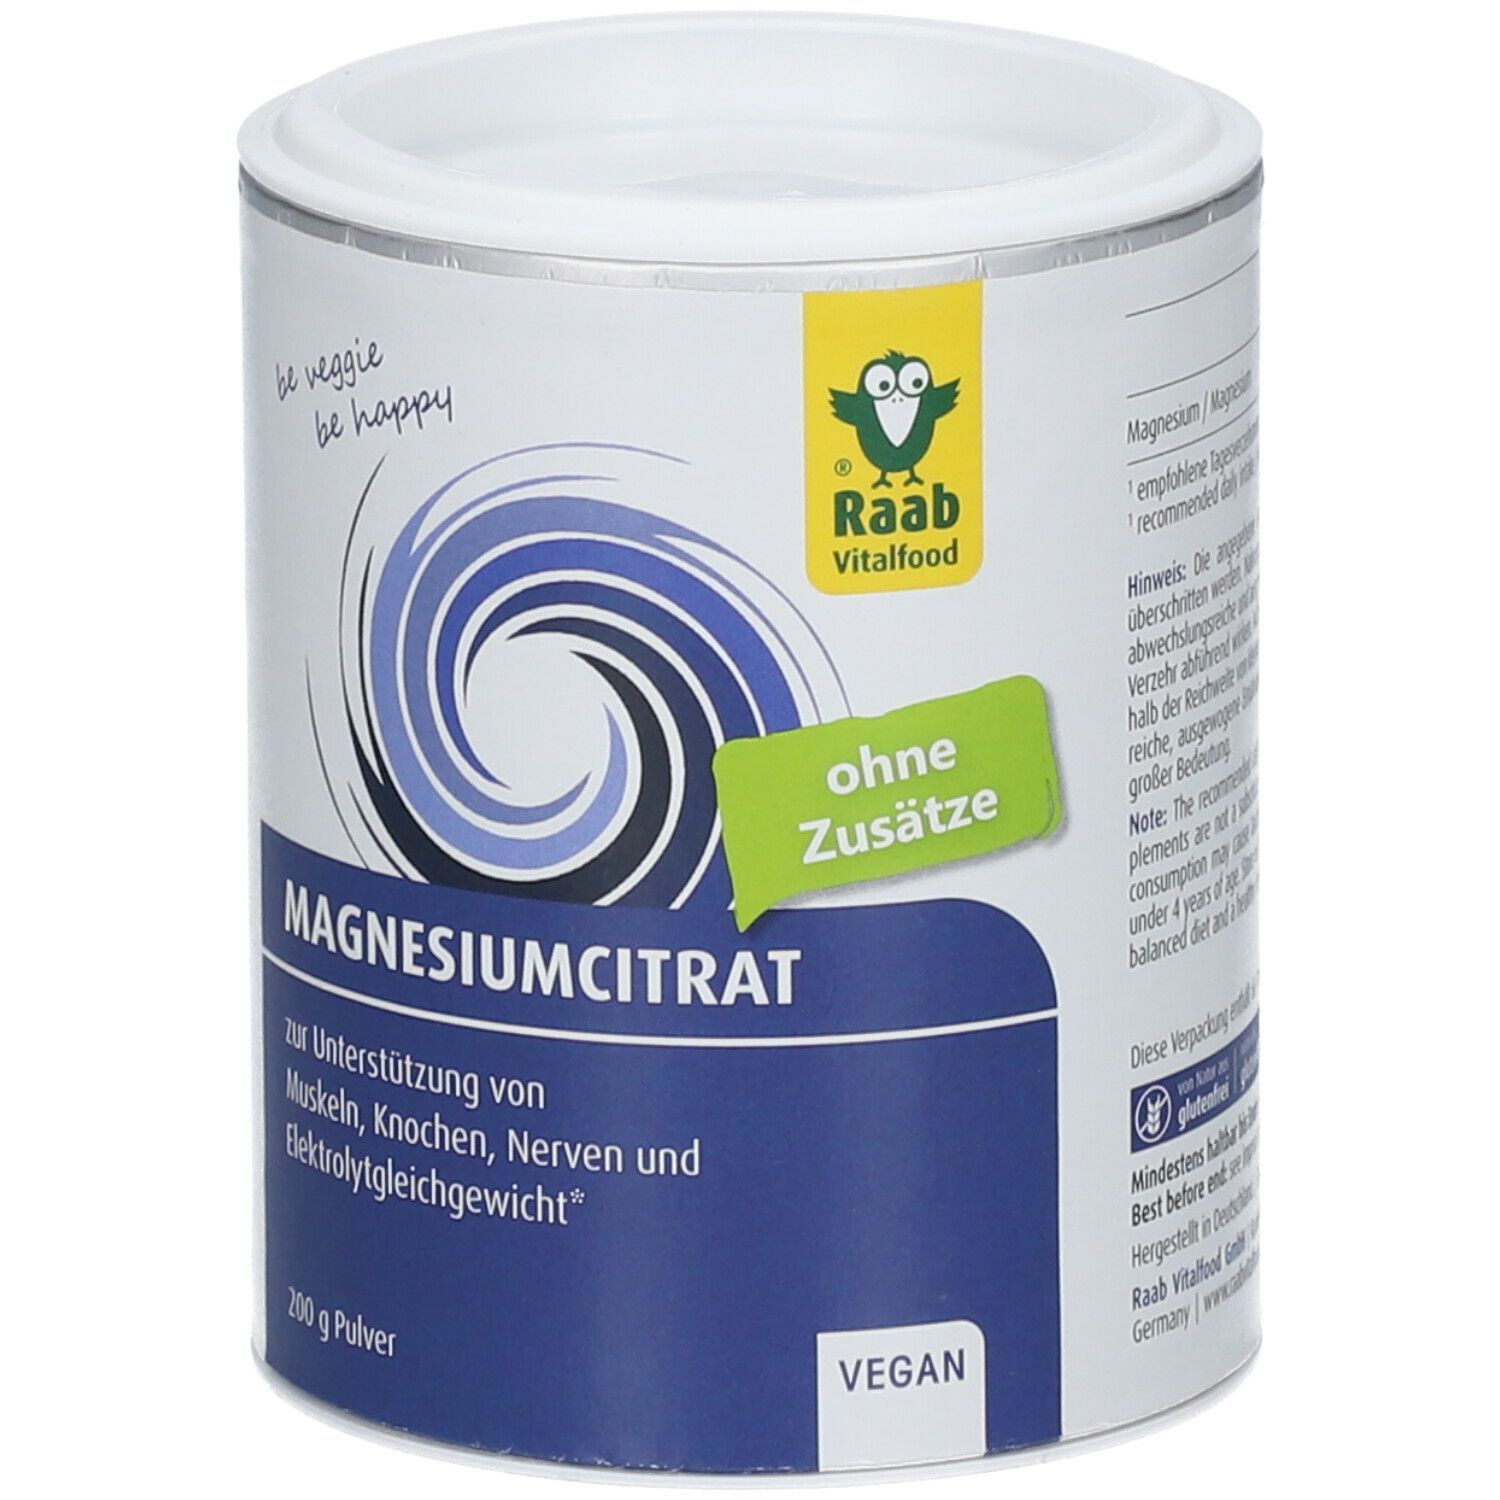 Raab® Vitalfood Magnesiumcitrat